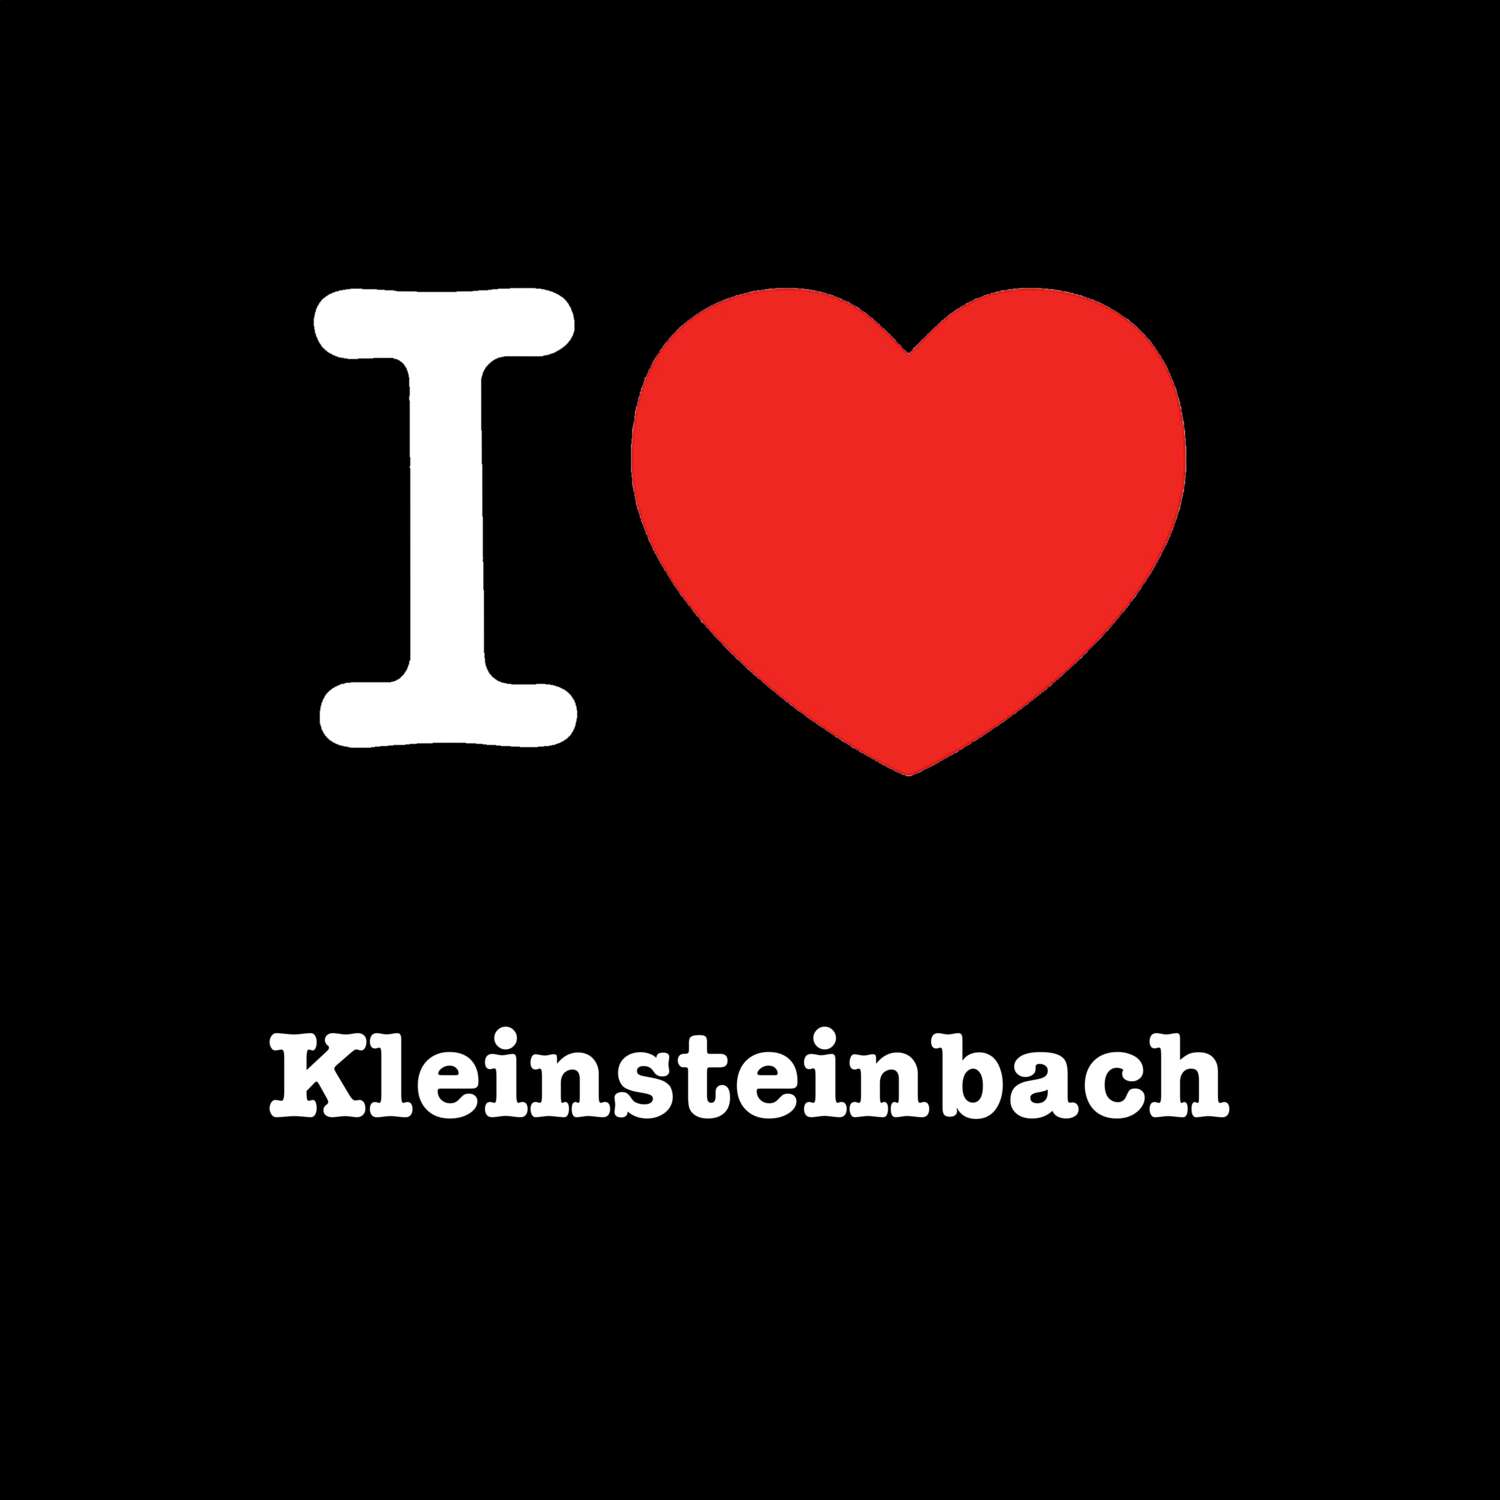 Kleinsteinbach T-Shirt »I love«